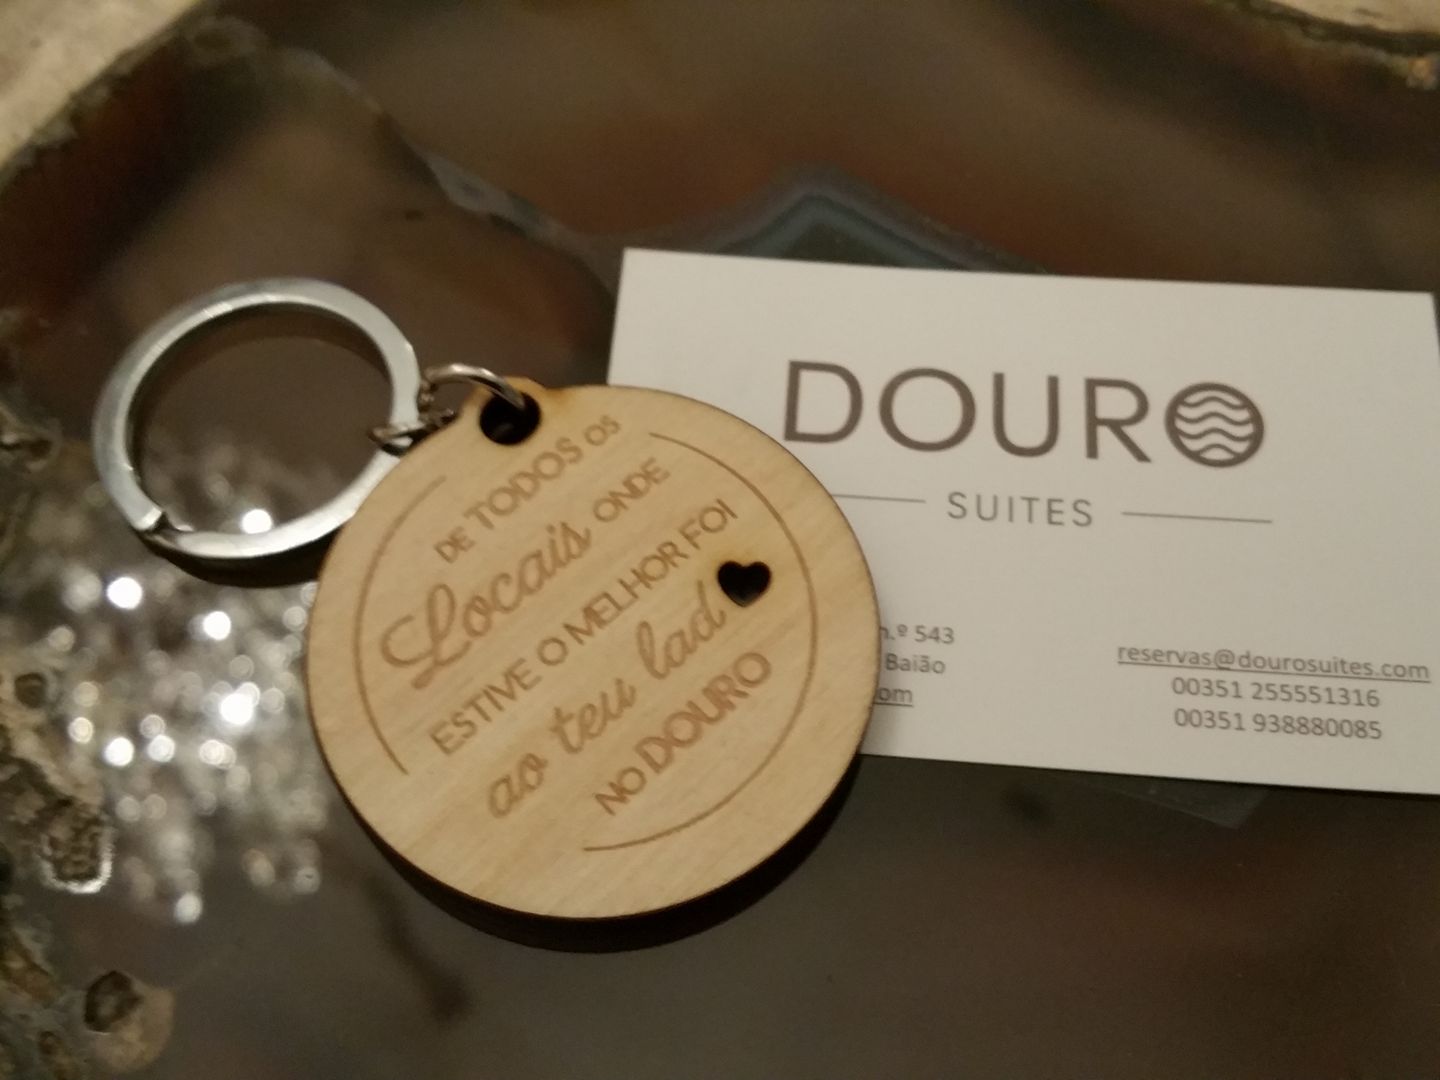 Douro Suites